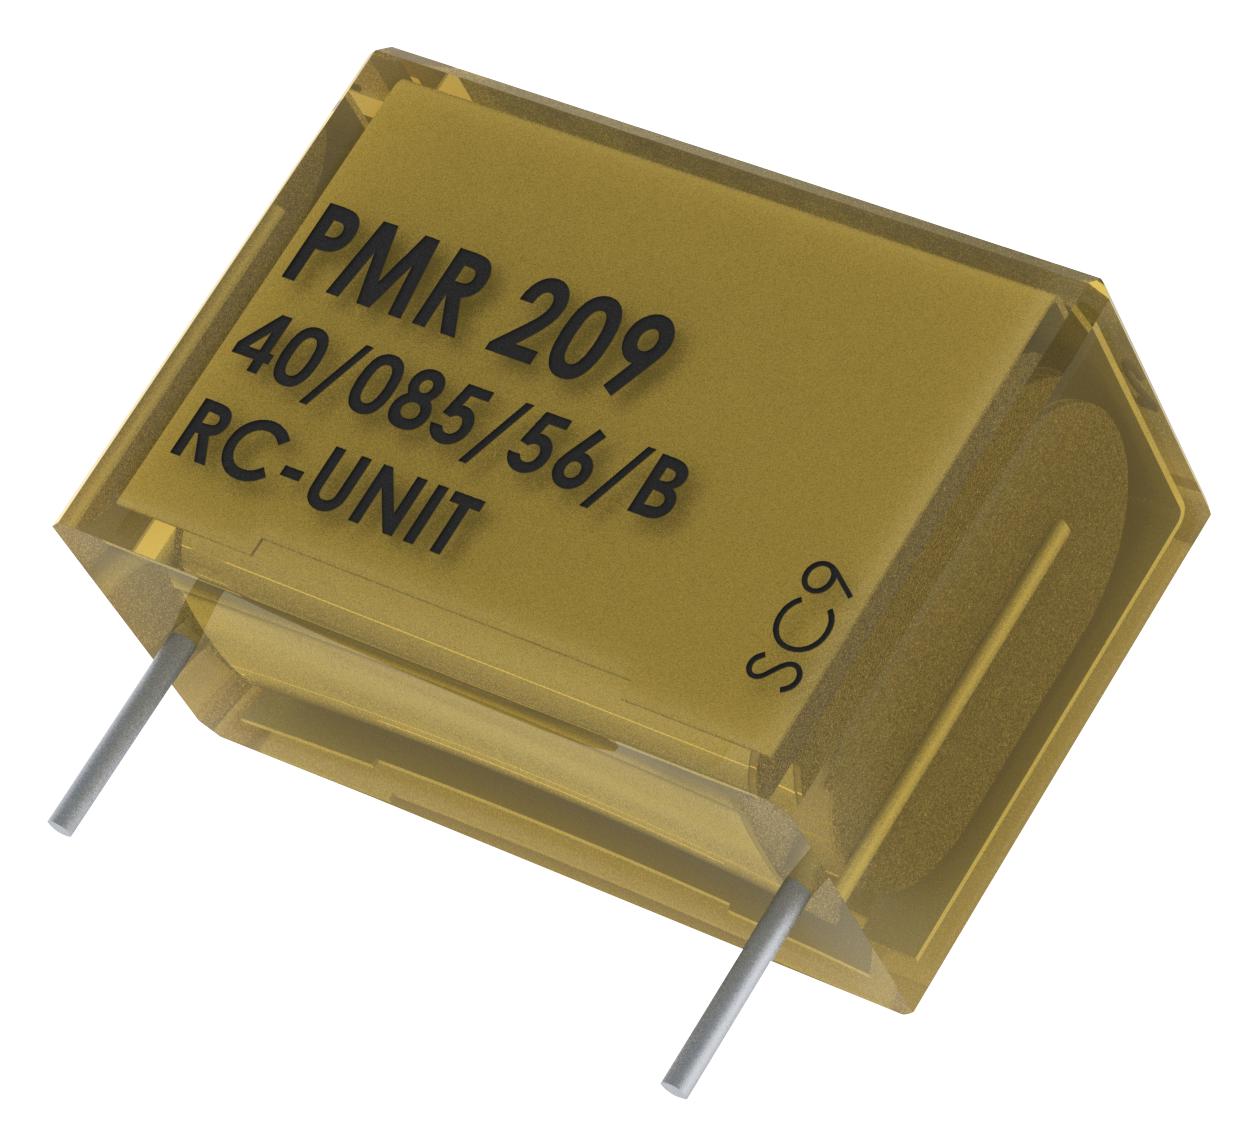 PMR209MC6100M047R30 CAP, 0.1µF, 20%, PAPER, RADIAL KEMET